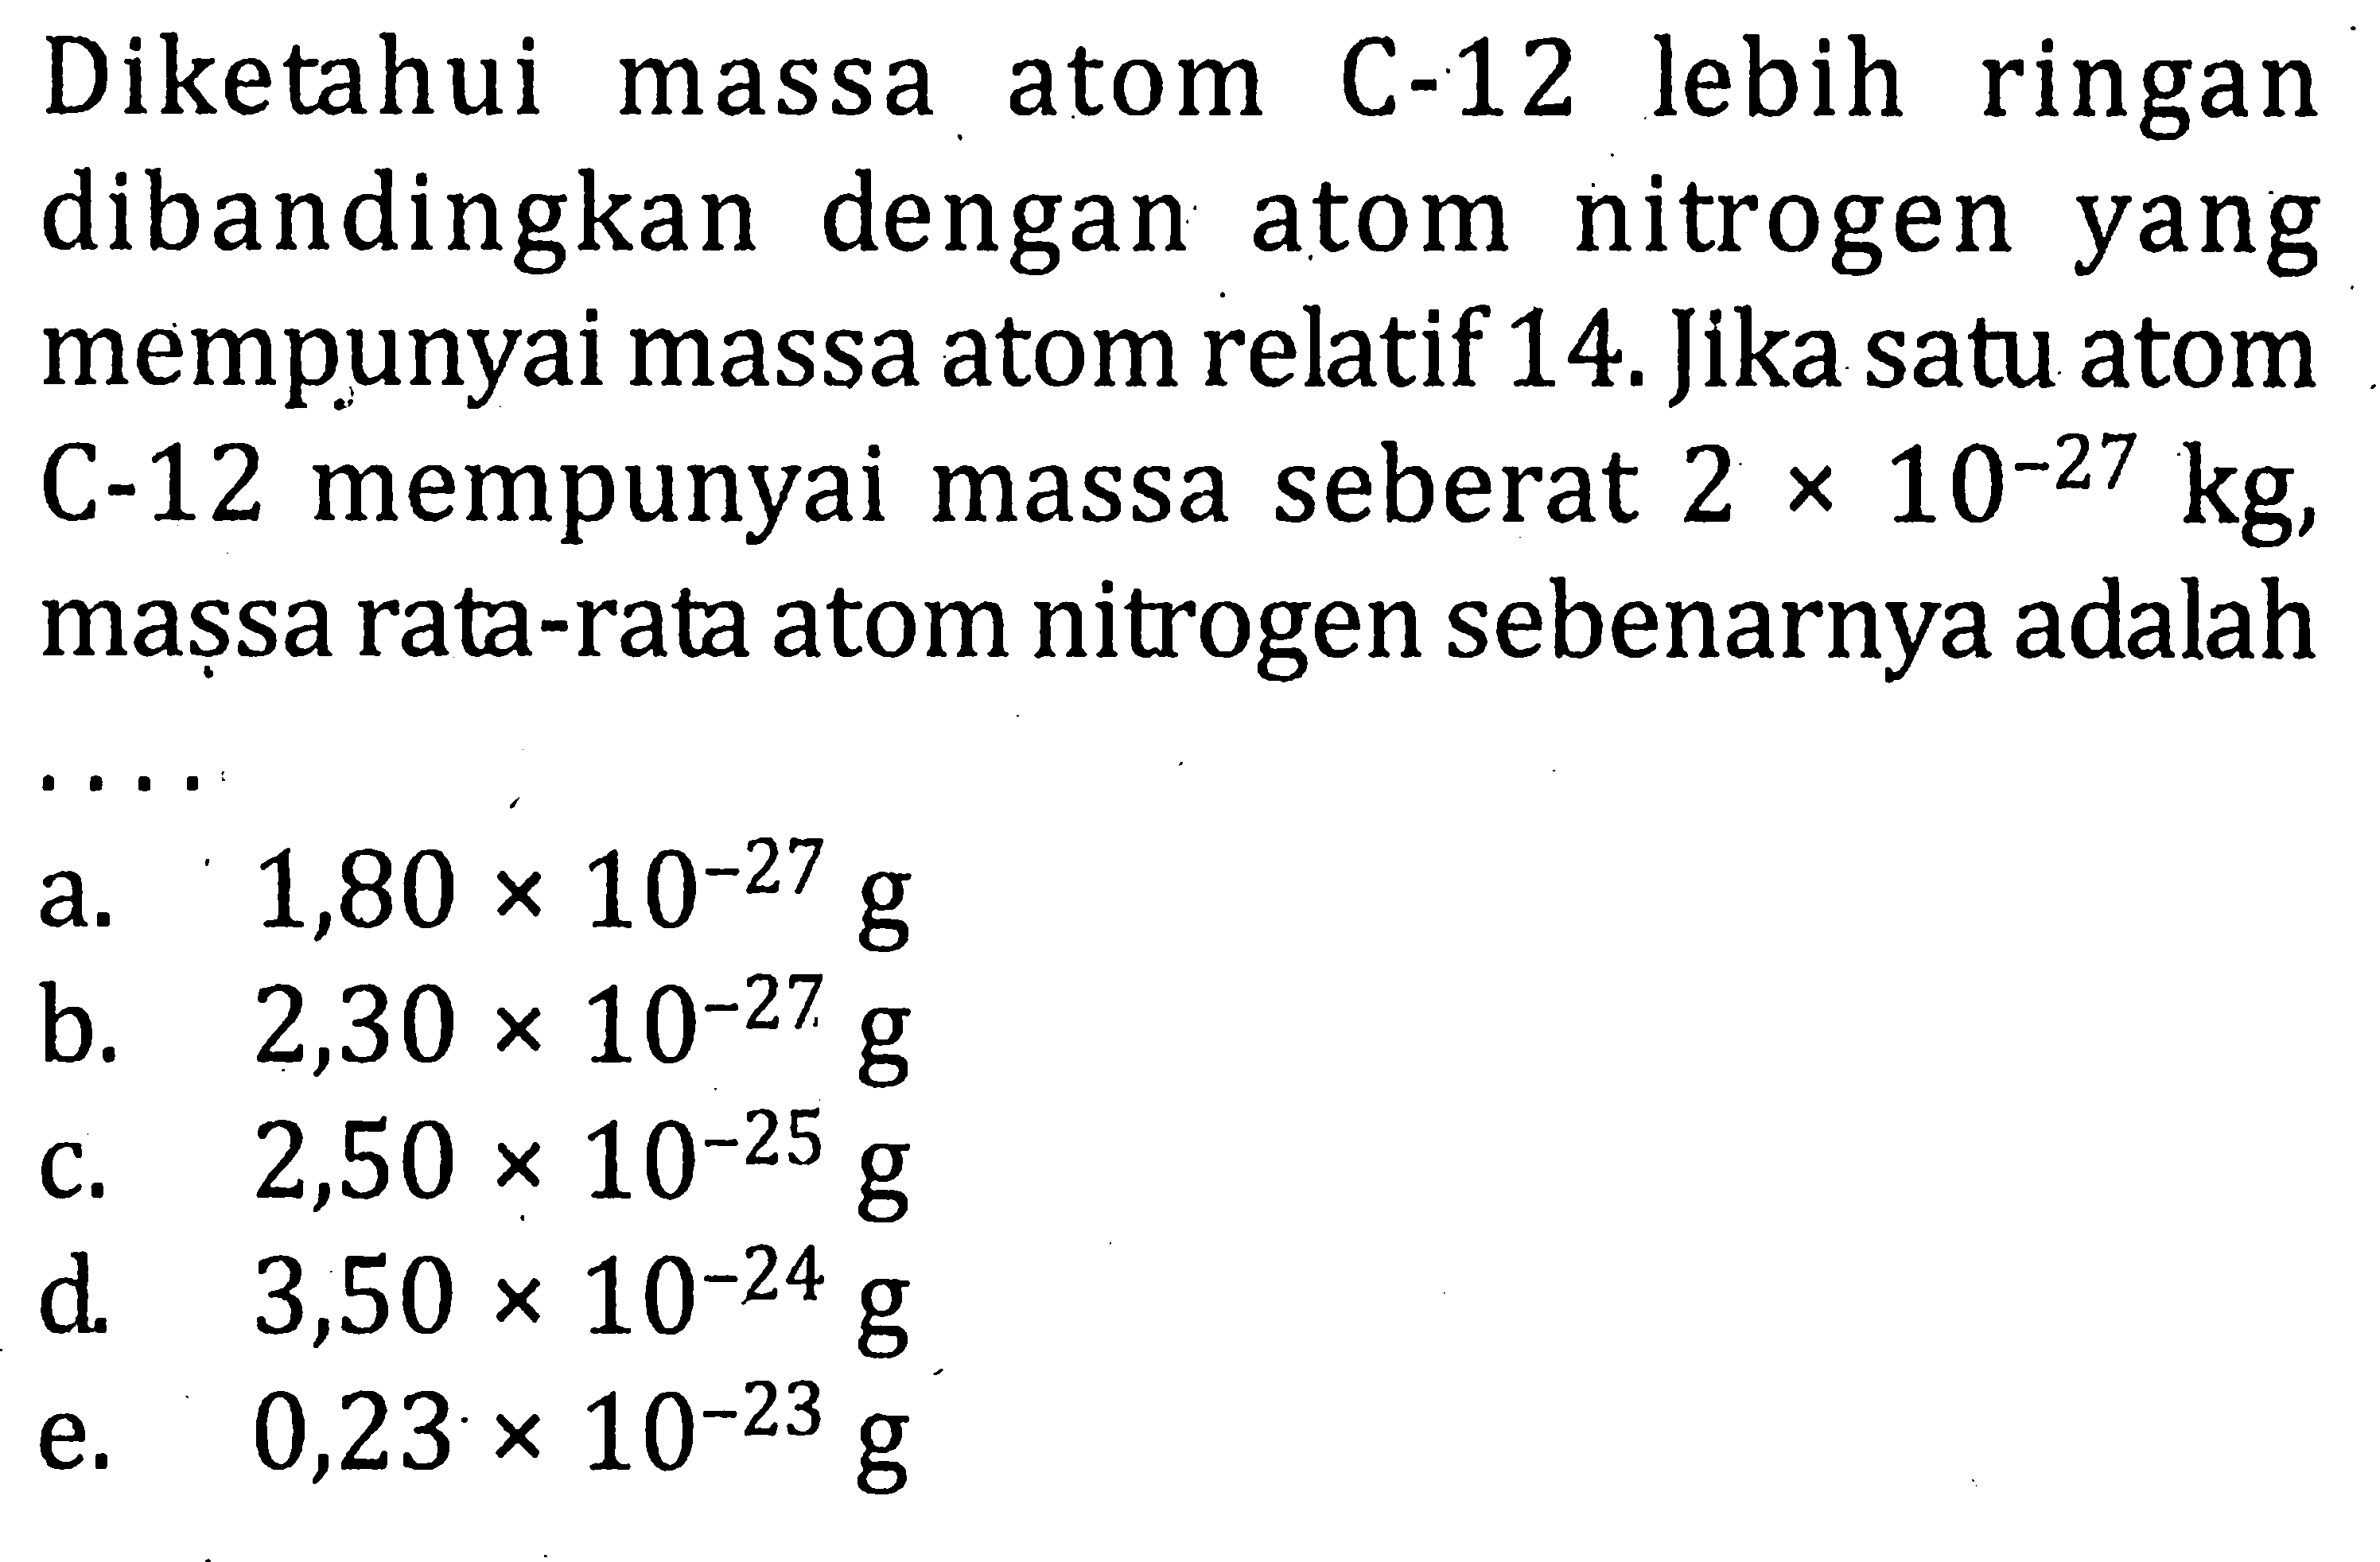 Diketahui massa atom C-12 lebih ringan dibandingkan dengan atom nitrogen yang mempunyai massa atom relatif 14. Jika satu atom C-12 mempunyai massa seberat 2 x 10^-27 kg, massa rata-rata atom nitrogen sebenarnya adalah .... 